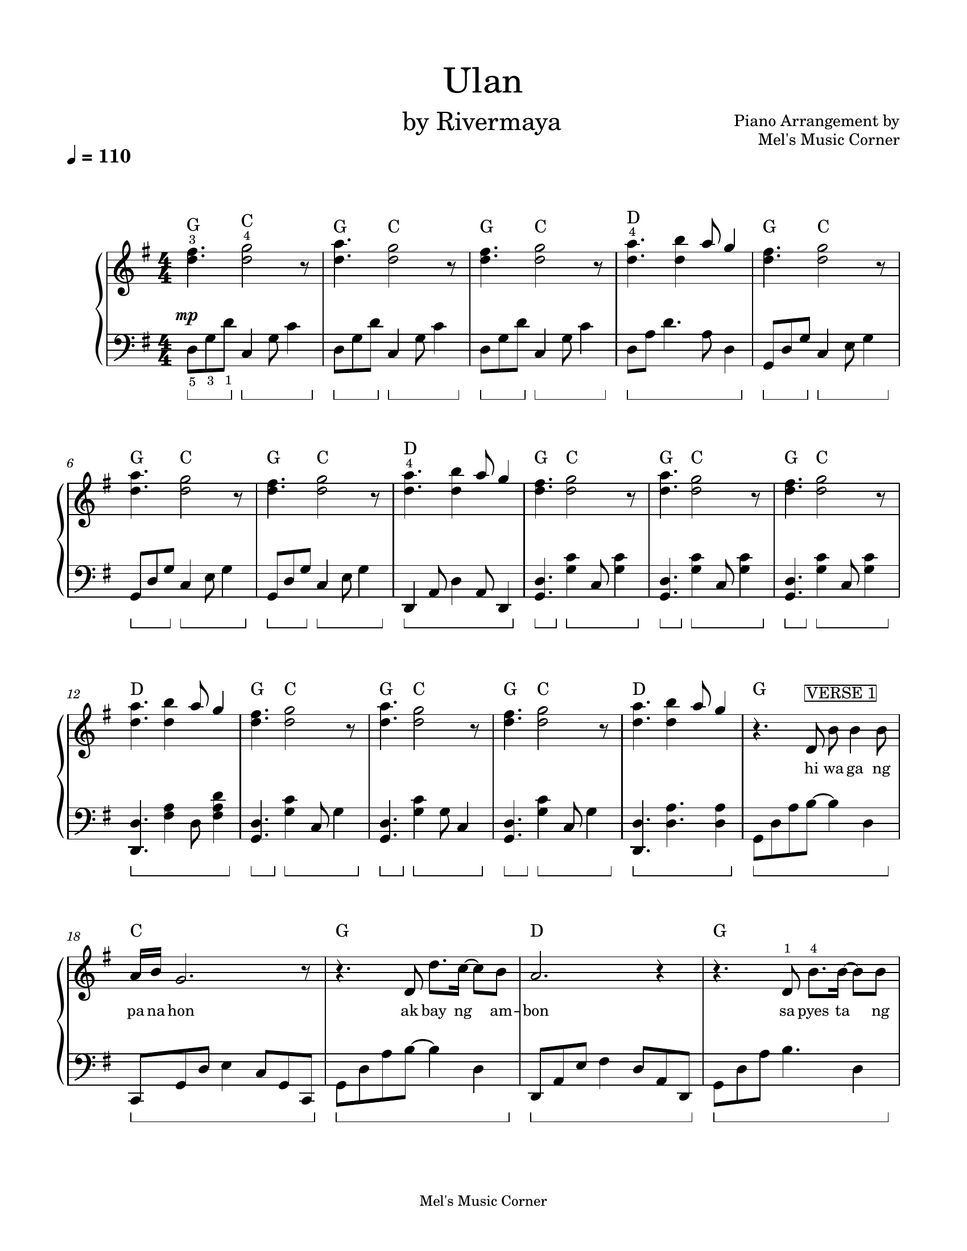 Rivermaya - Ulan (piano sheet music) by Mel's Music Corner